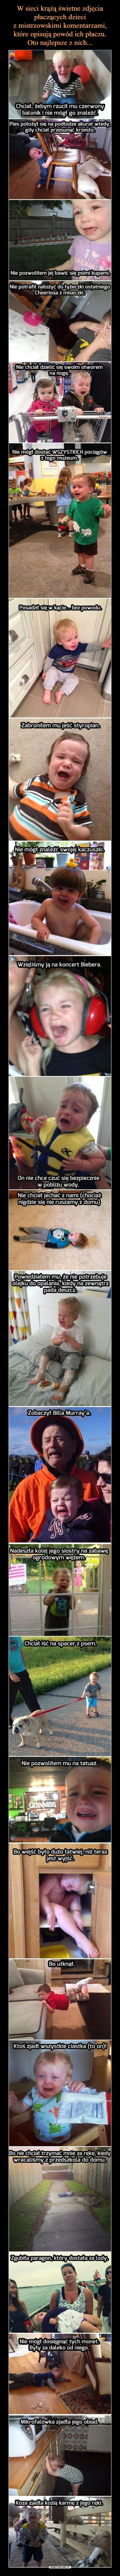 W sieci krążą świetne zdjęcia płaczących dzieci
z mistrzowskimi komentarzami, które opisują powód ich płaczu.
Oto najlepsze z nich...